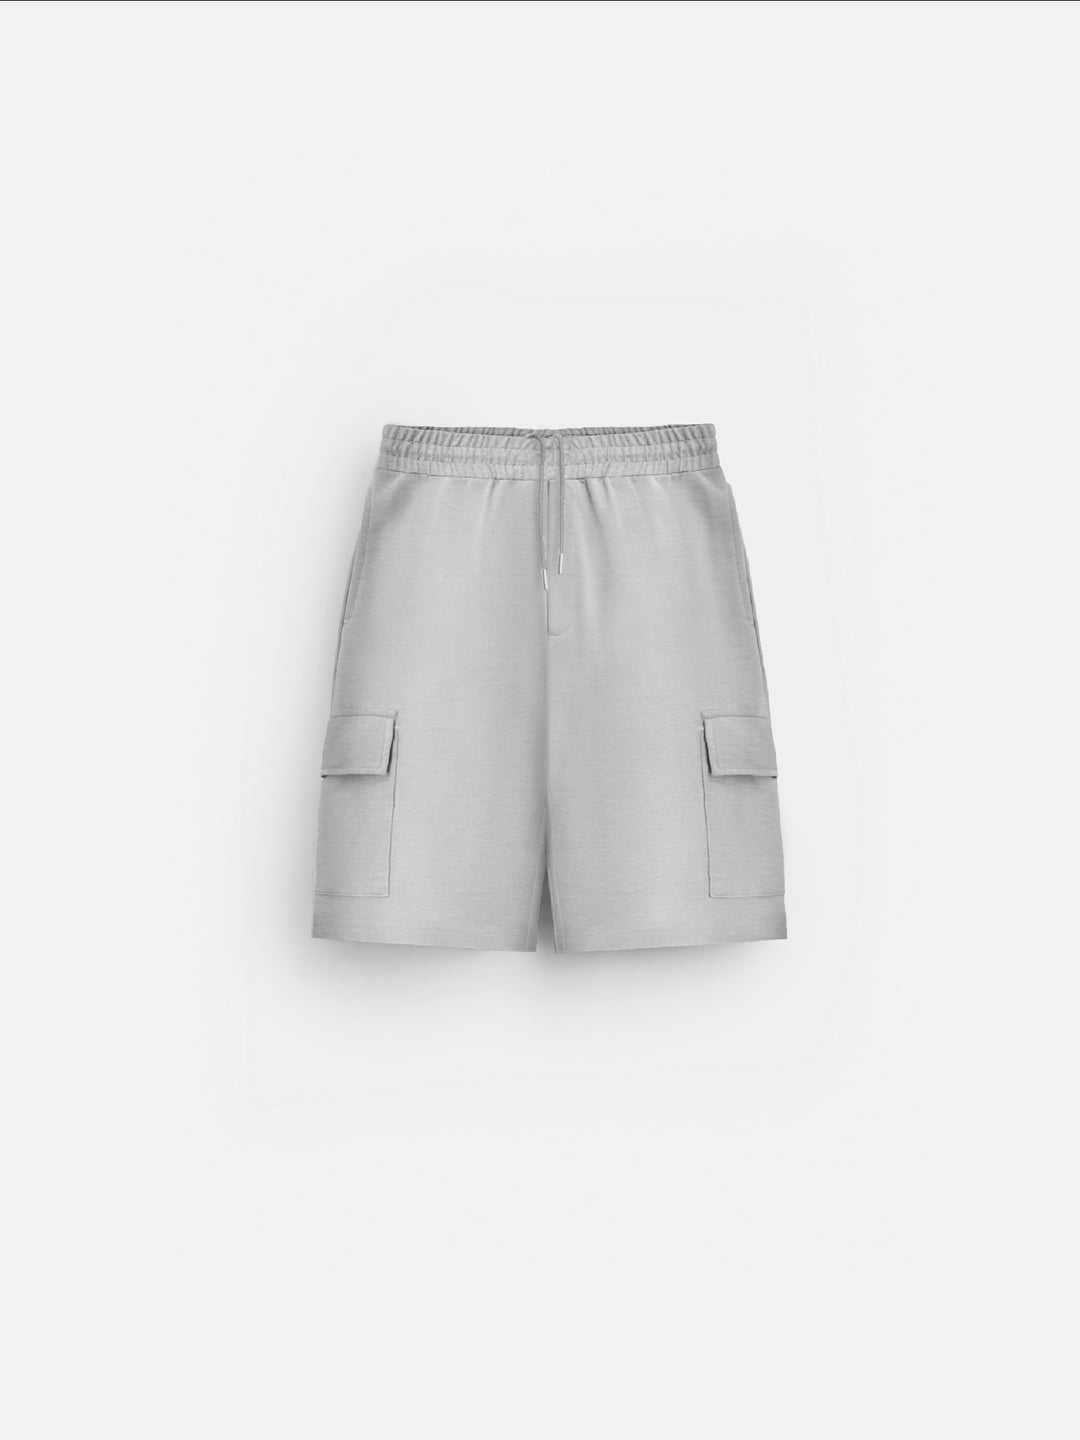 Loose Fit Pocket Shorts - Grey